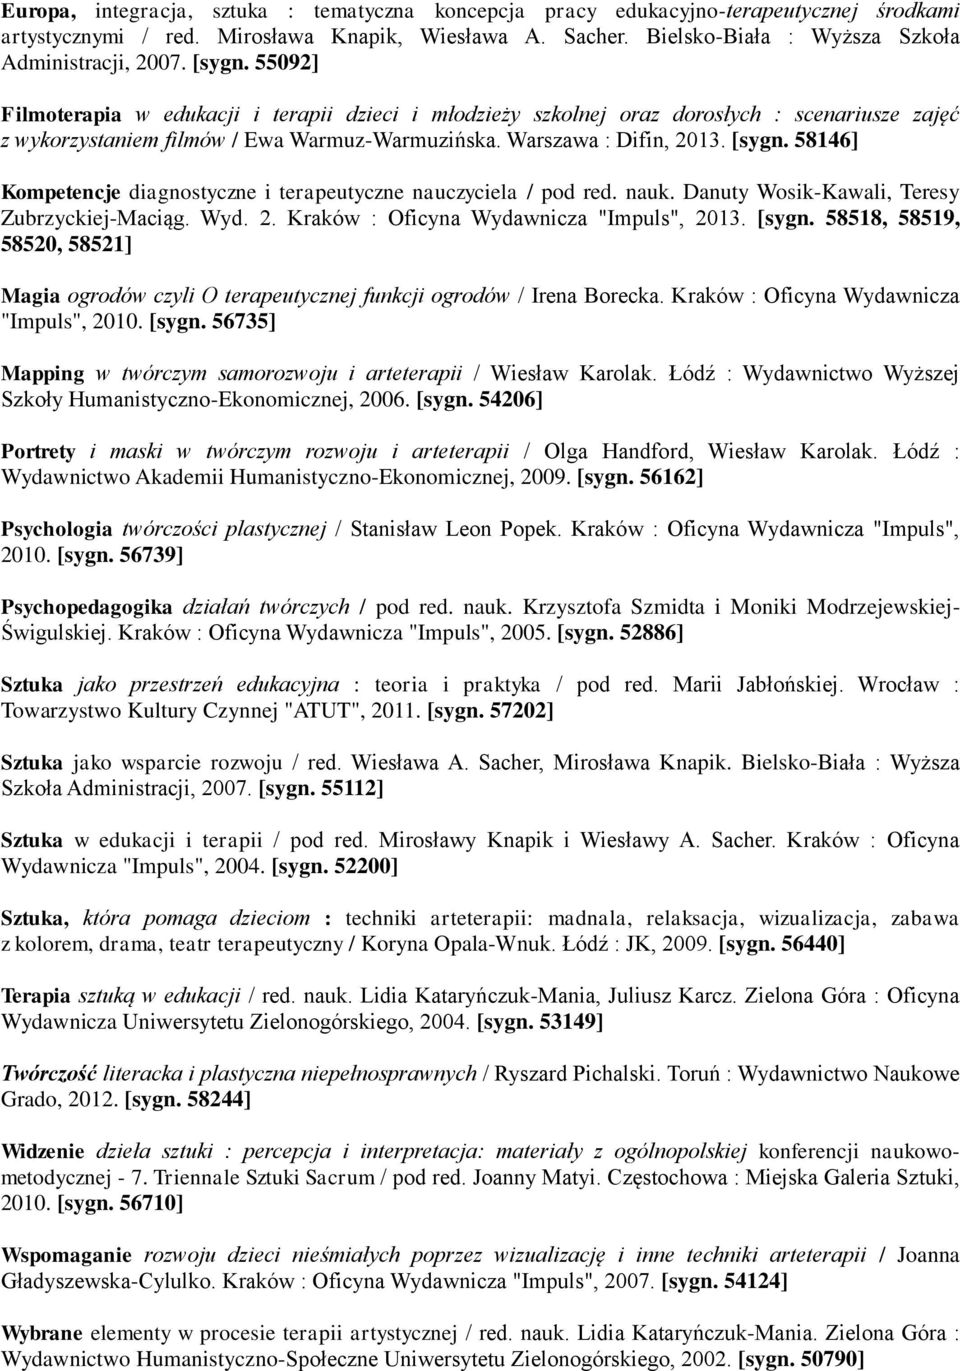 58146] Kompetencje diagnostyczne i terapeutyczne nauczyciela / pod red. nauk. Danuty Wosik-Kawali, Teresy Zubrzyckiej-Maciąg. Wyd. 2. Kraków : Oficyna Wydawnicza "Impuls", 2013. [sygn.